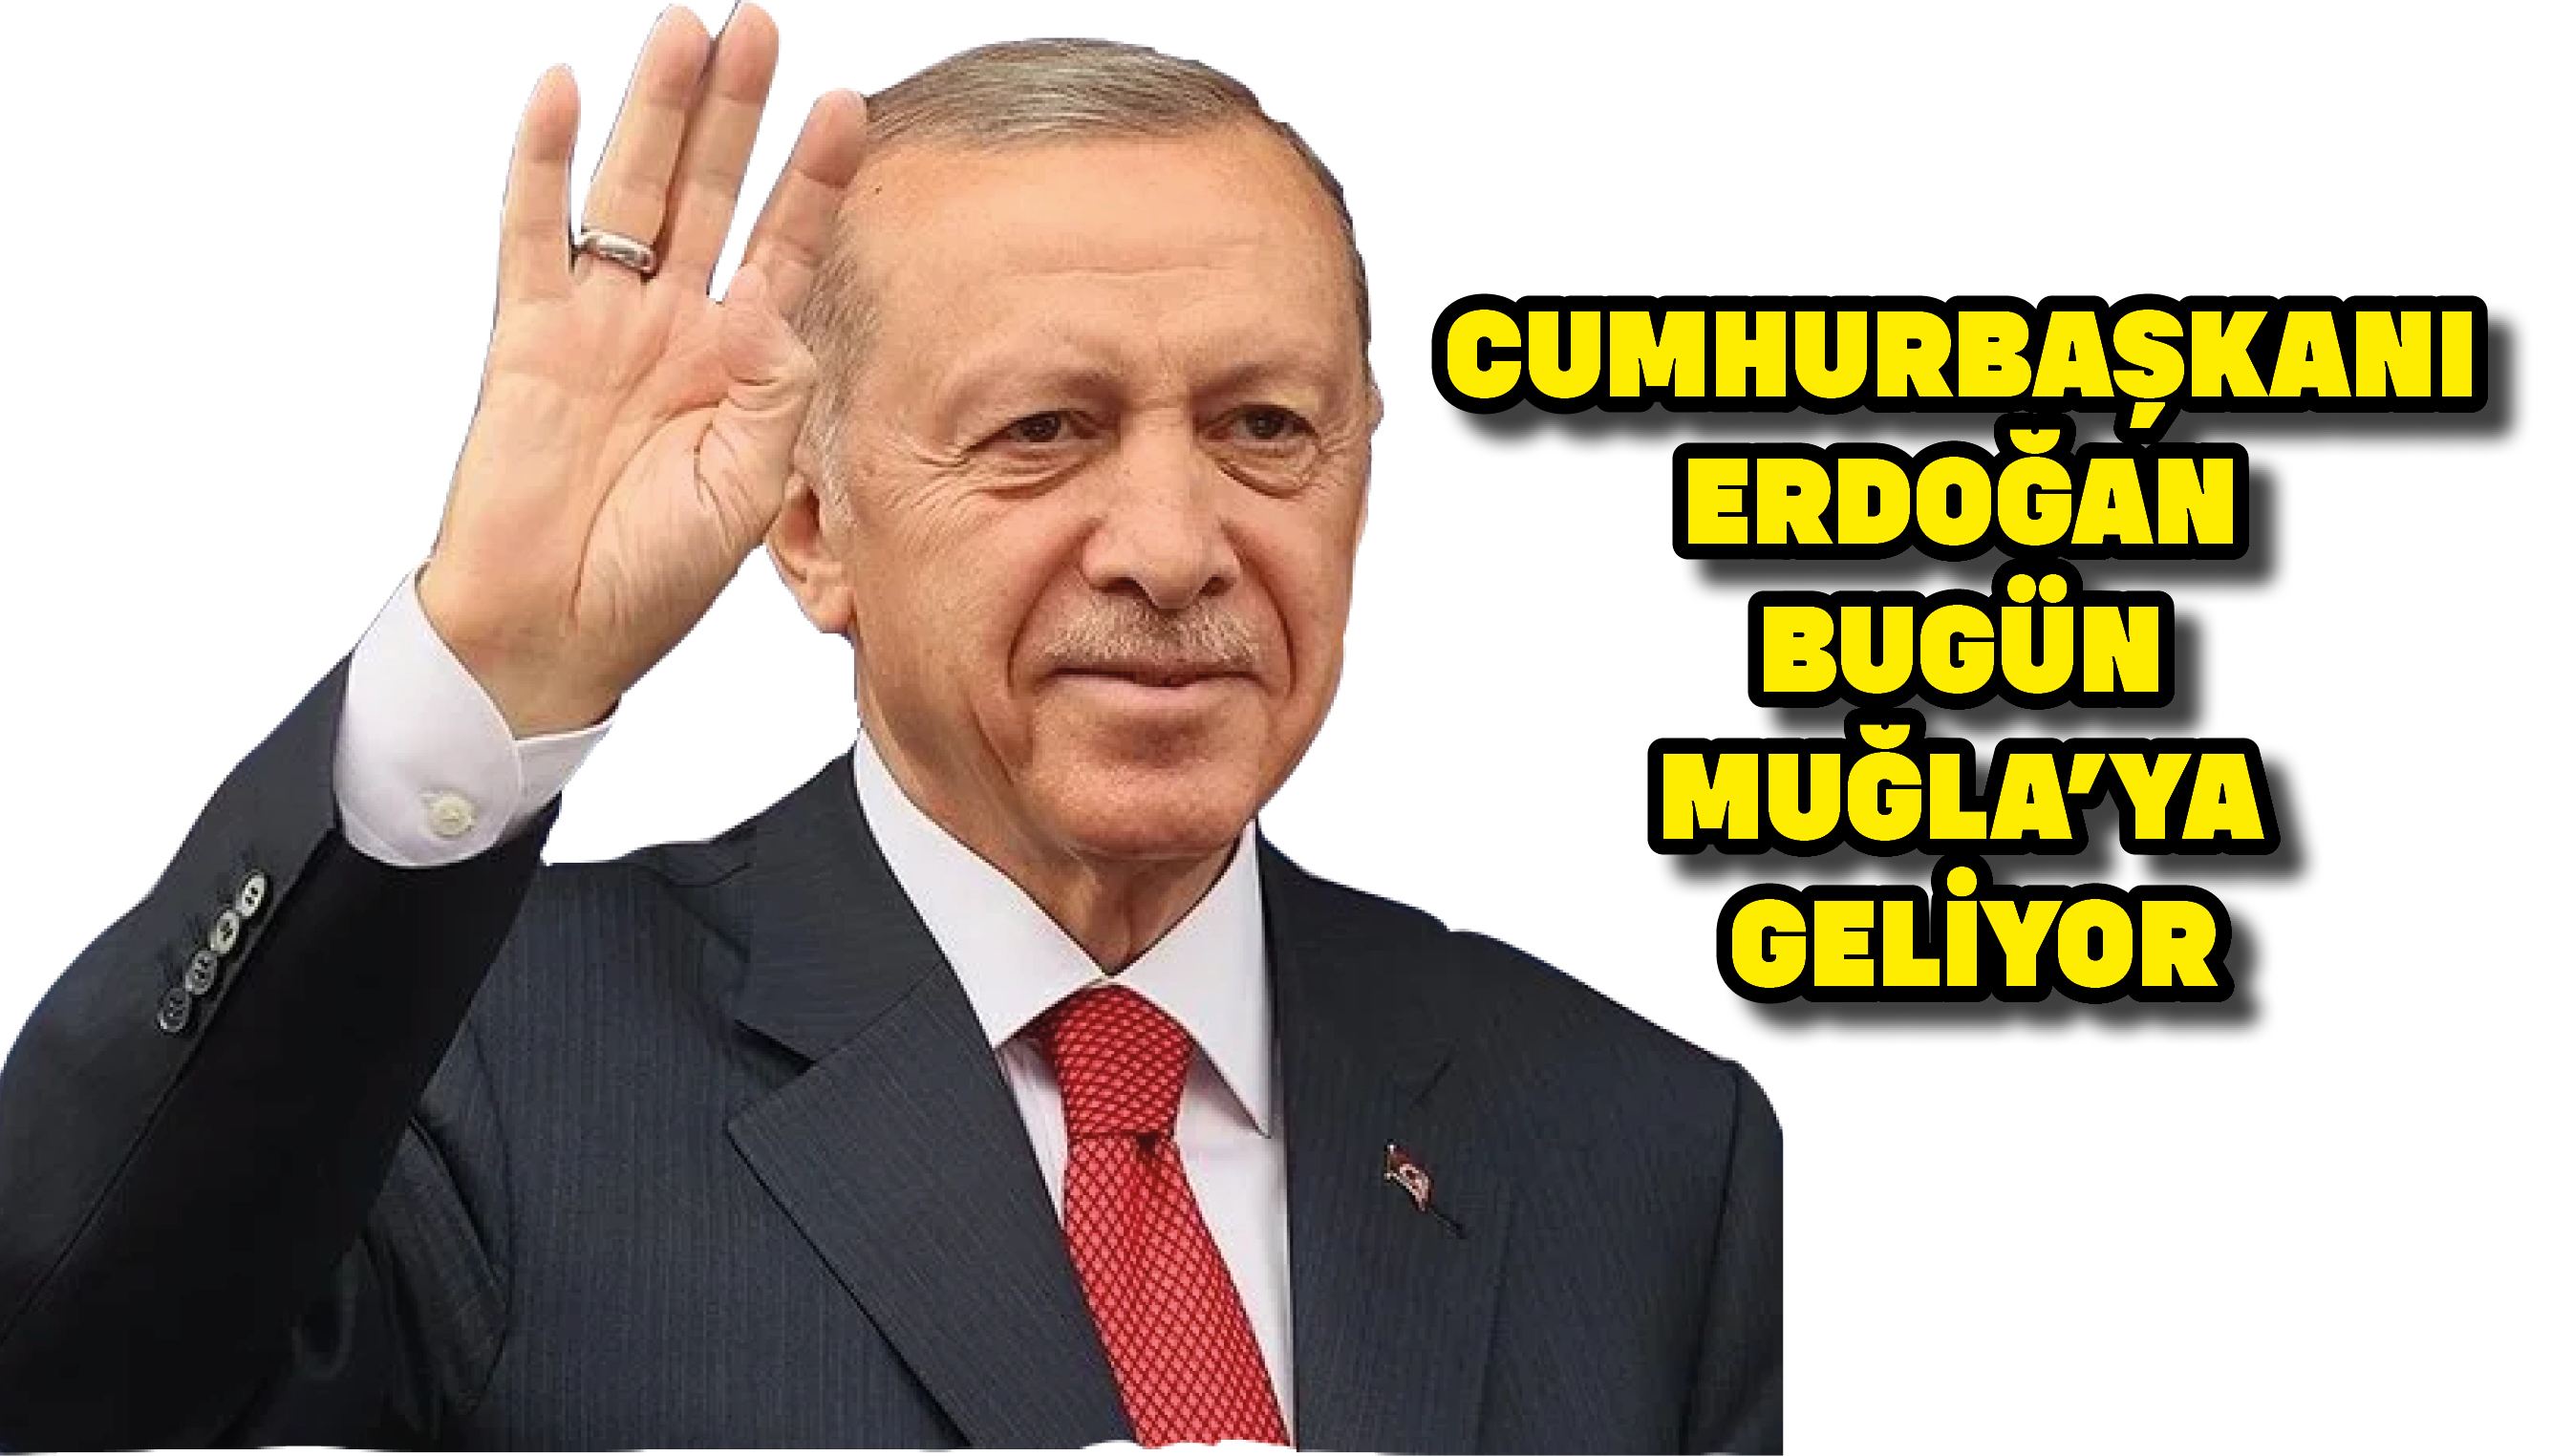 Cumhurbaşkanı Erdoğan bugün Muğla’ya geliyor